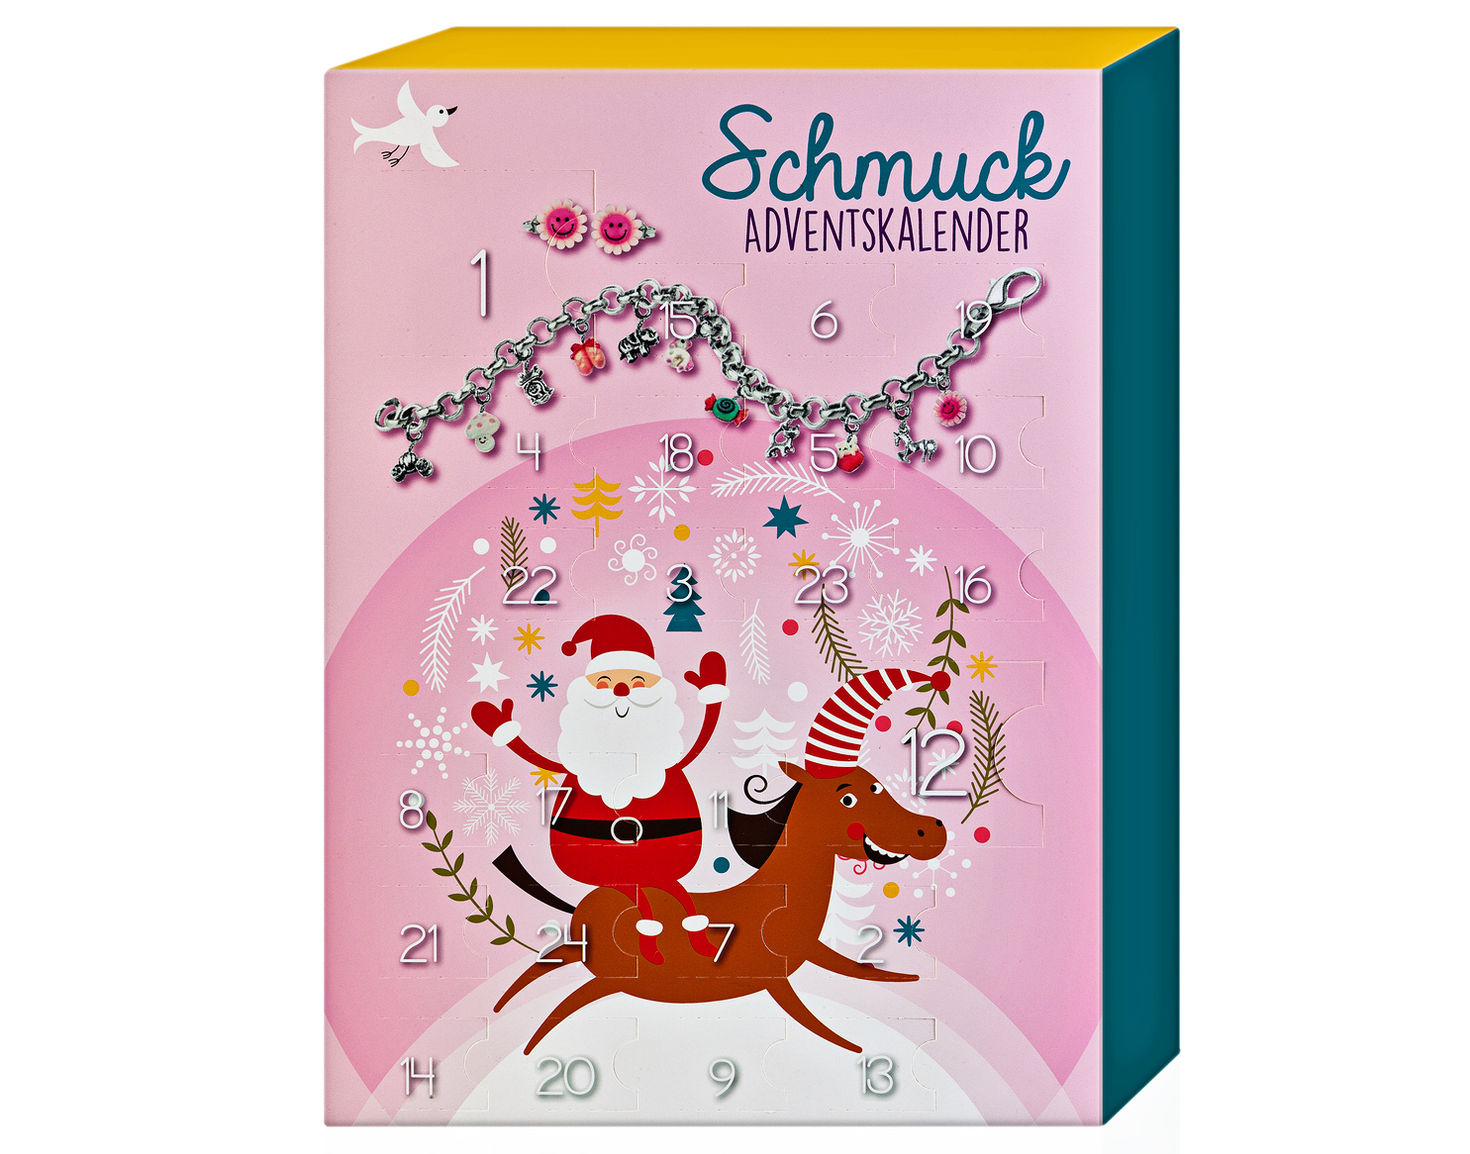 Schmuck Adventskalender für Kinder - Kalender bei Weltbild.at